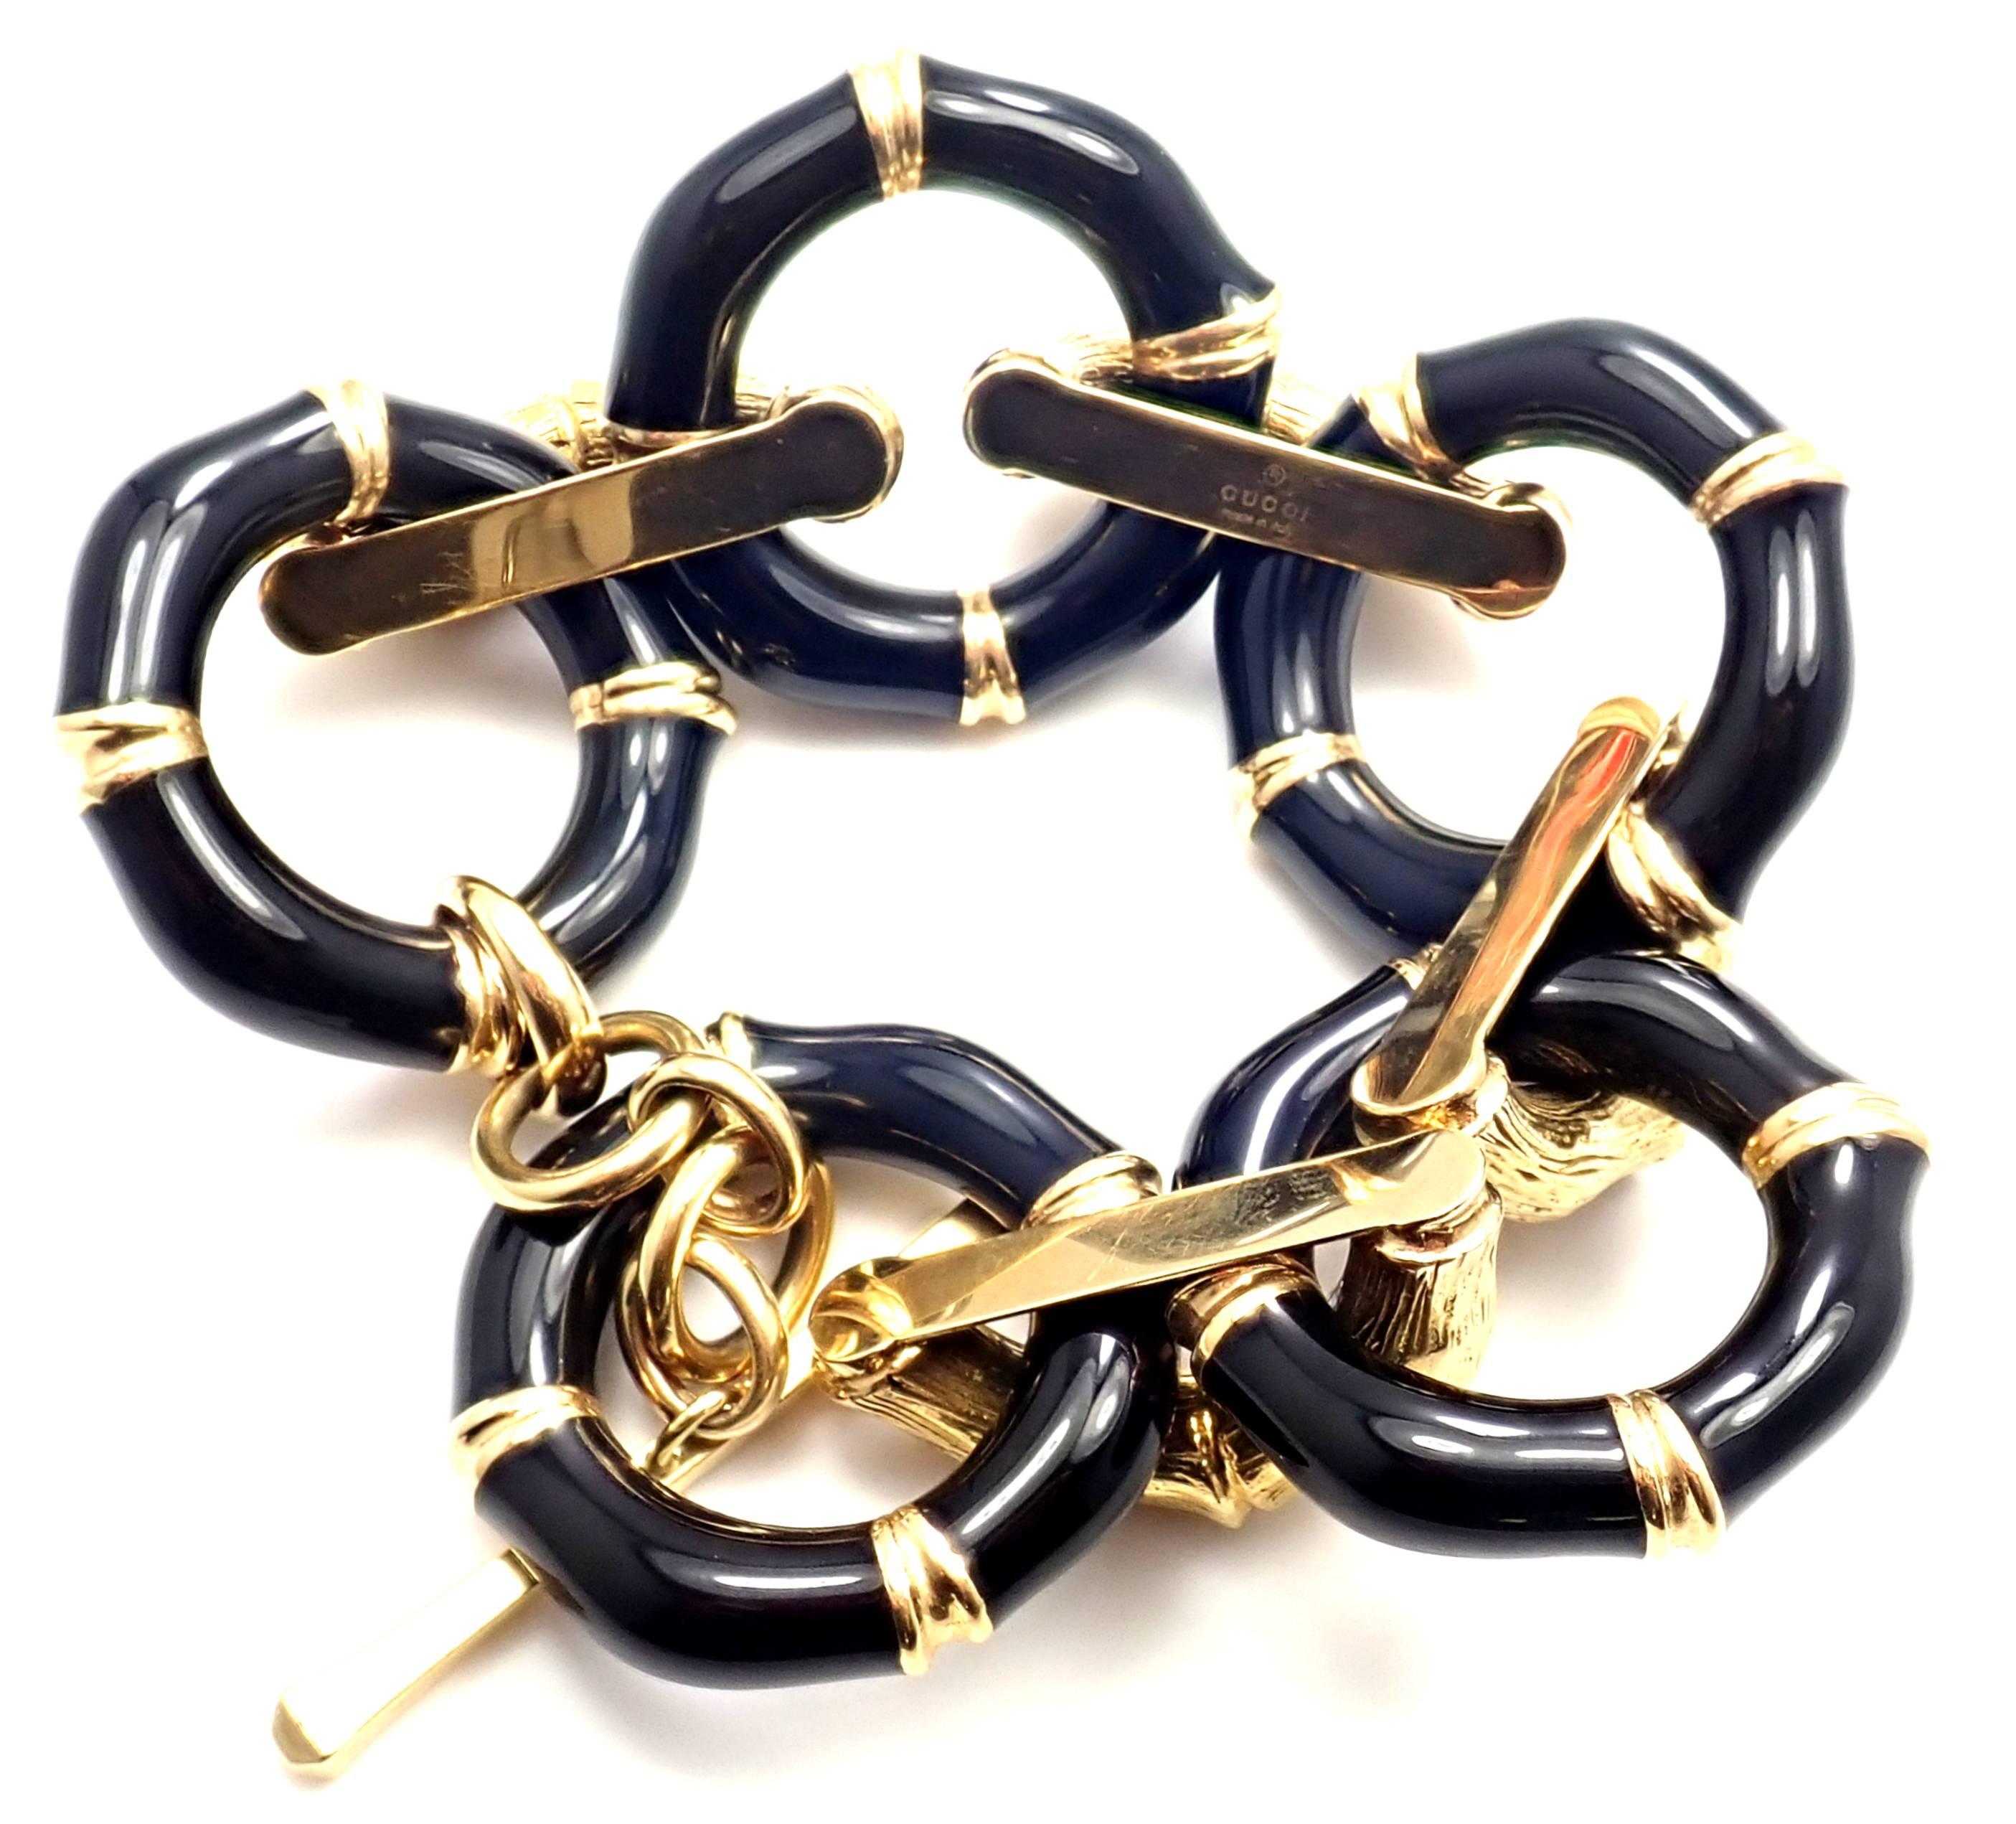 18k Yellow Gold Black Enamel Vintage Bamboo Large Link Bracelet by Gucci.
Details:
Length: 8